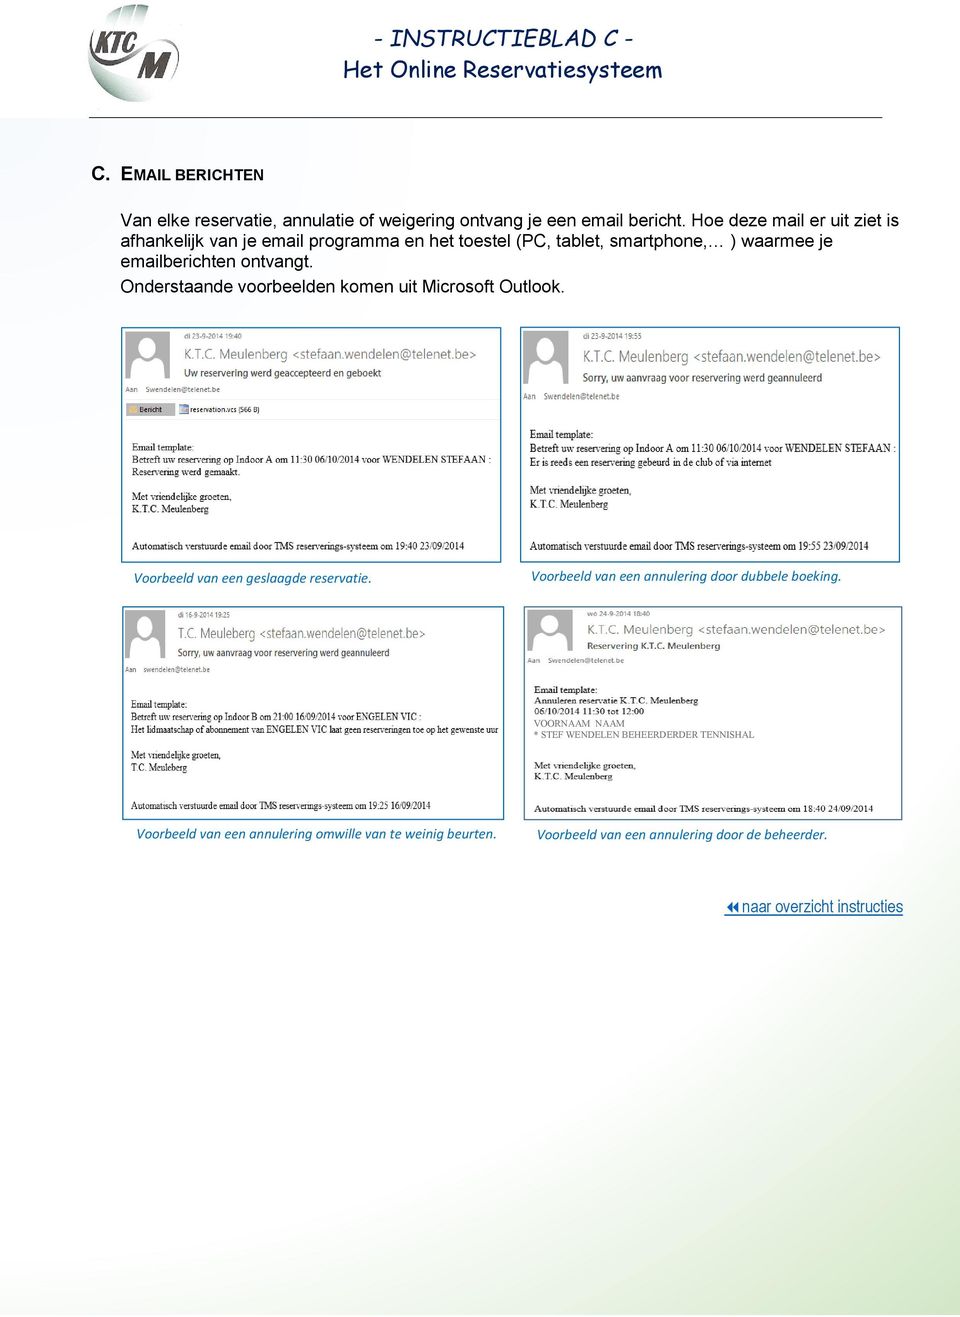 Onderstaande voorbeelden komen uit Microsoft Outlook. Voorbeeld van een geslaagde reservatie. Voorbeeld van een annulering door dubbele boeking.